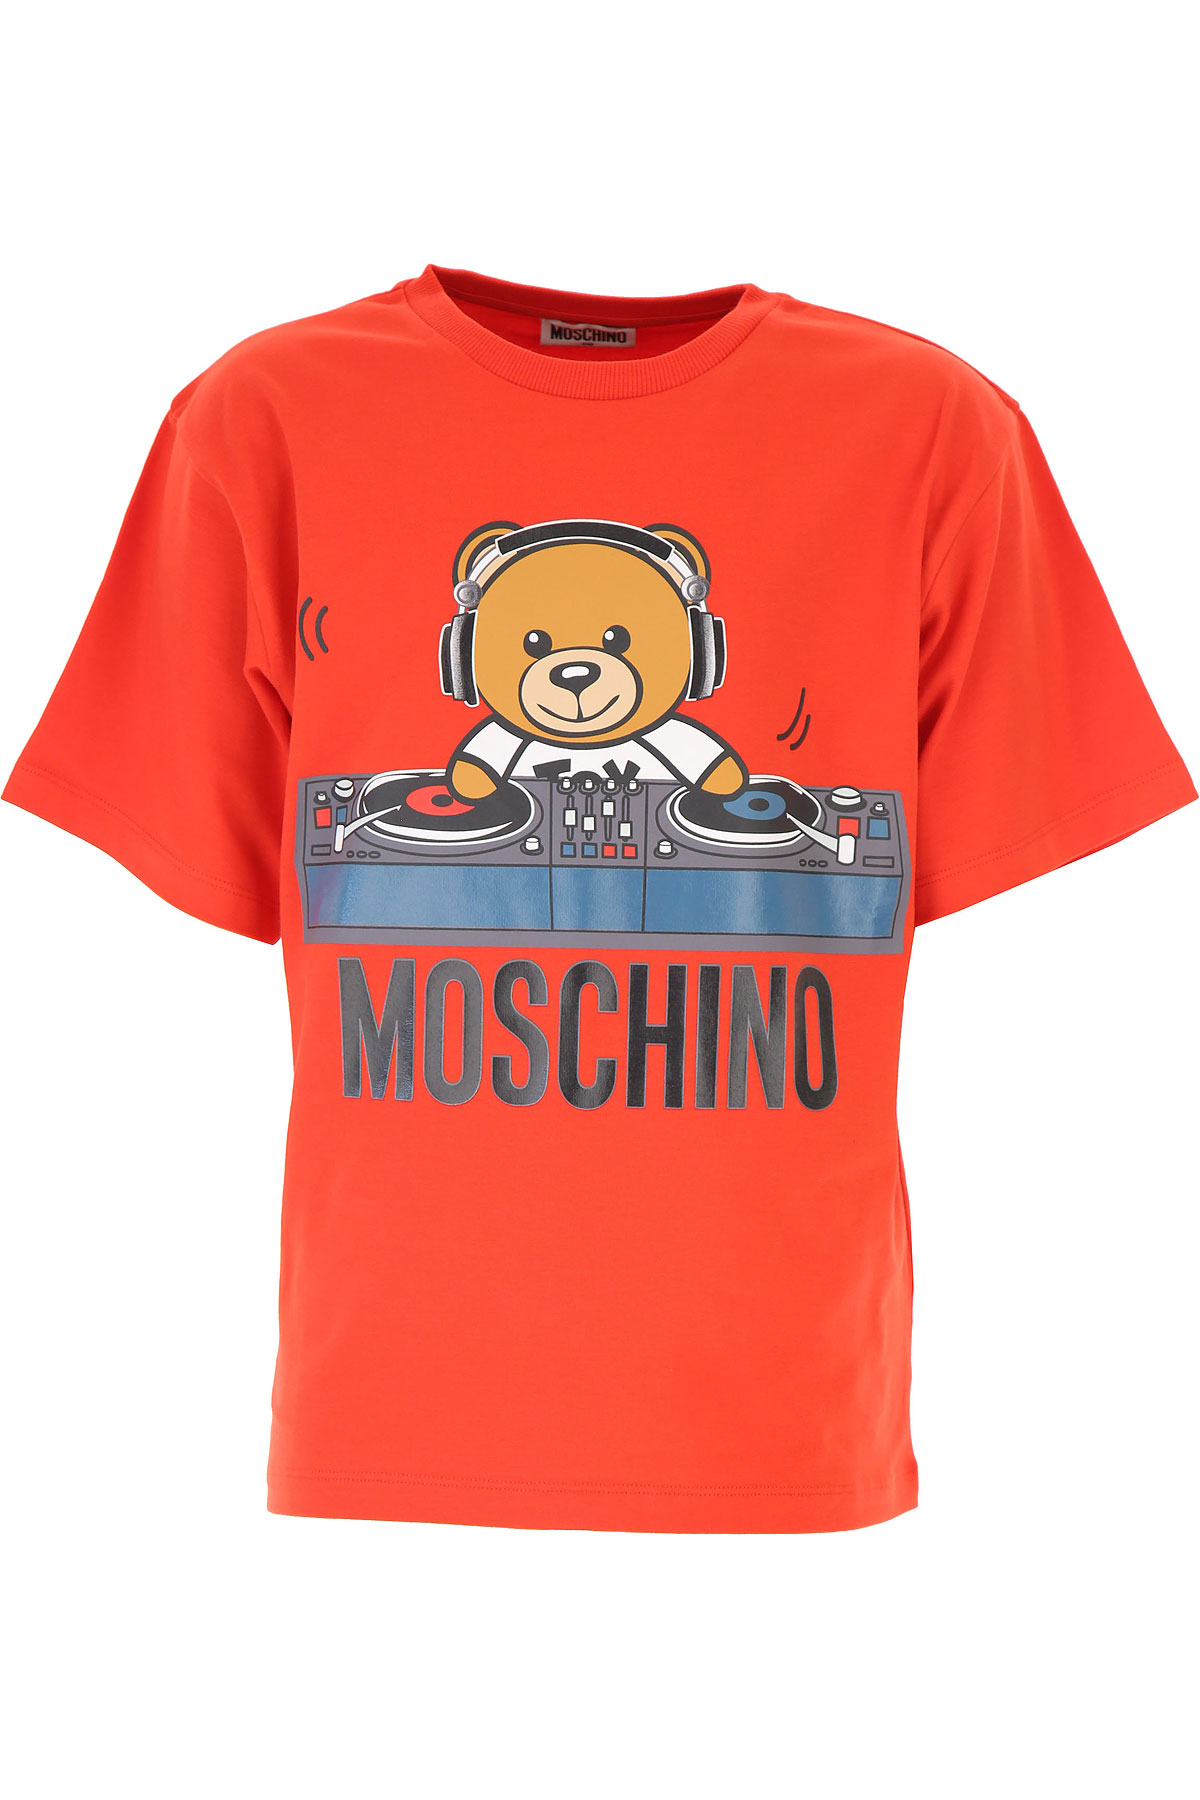 Moschino Kinder T-Shirt für Jungen Günstig im Sale, Mohnblumenrot, Baumwolle, 2017, 6Y 8Y